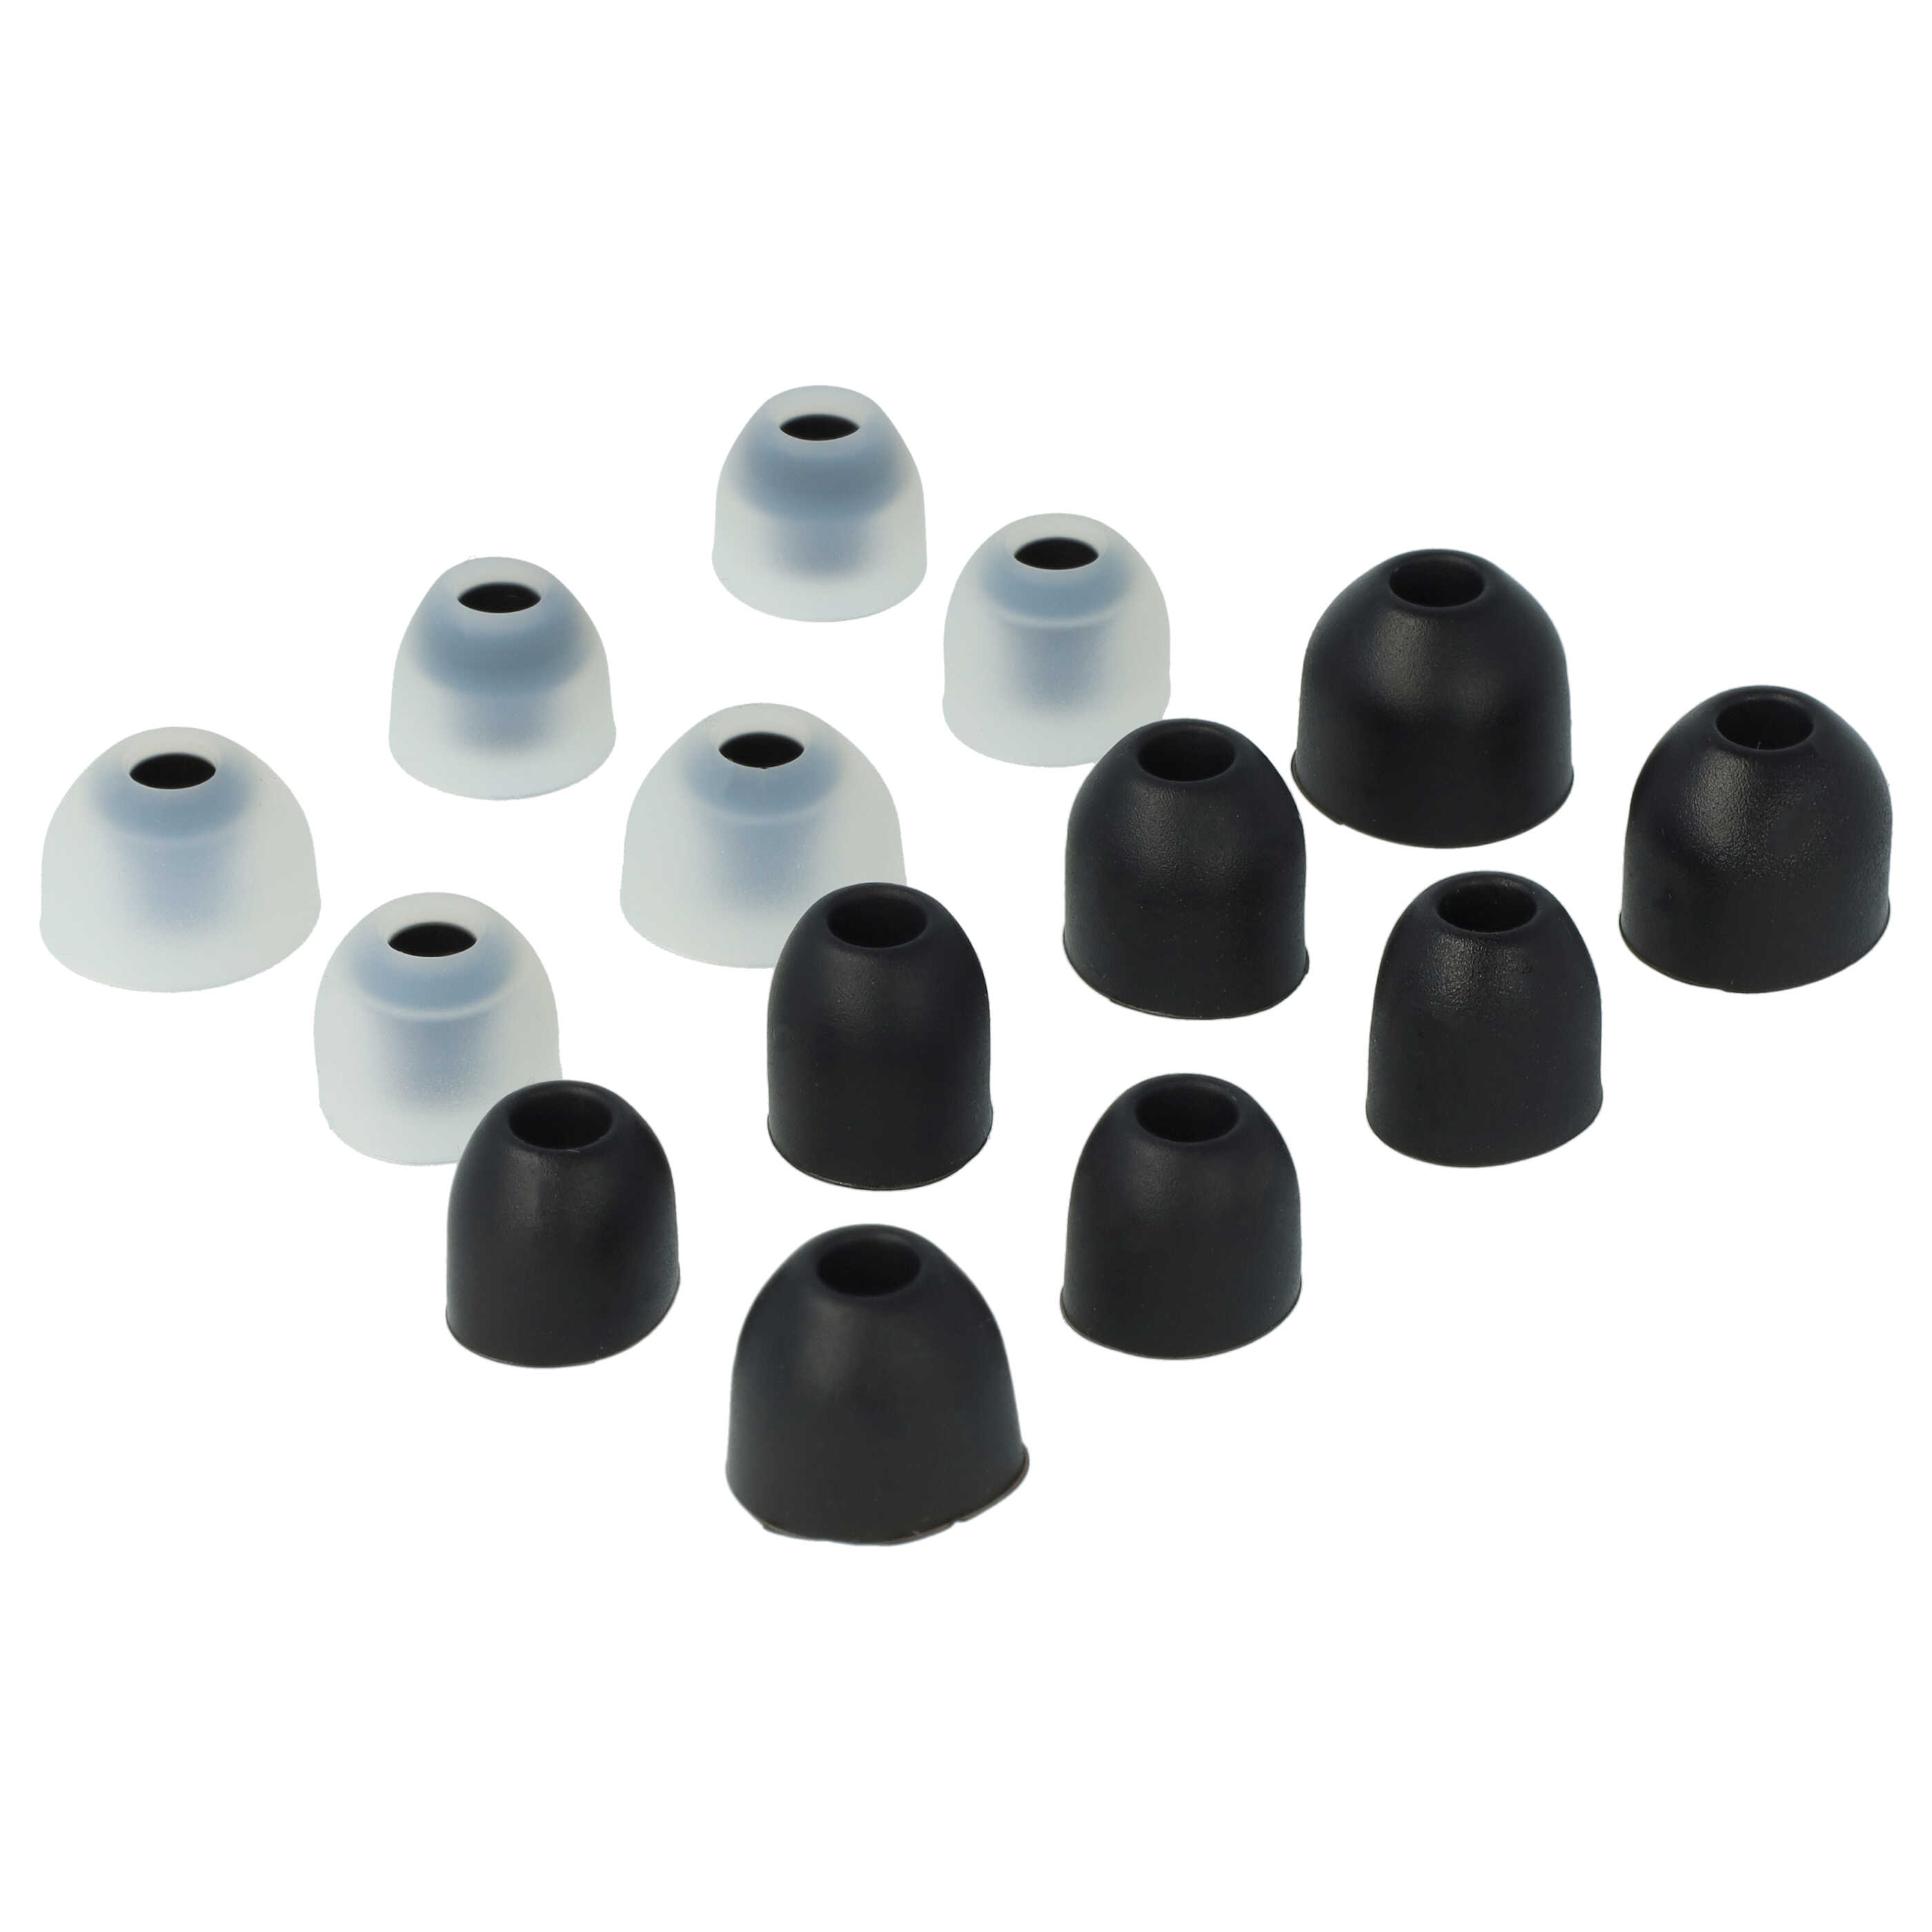  7x pares de tapones compatible con Sony WF-1000XM3 para auriculares inalámbricos - negro / blanco